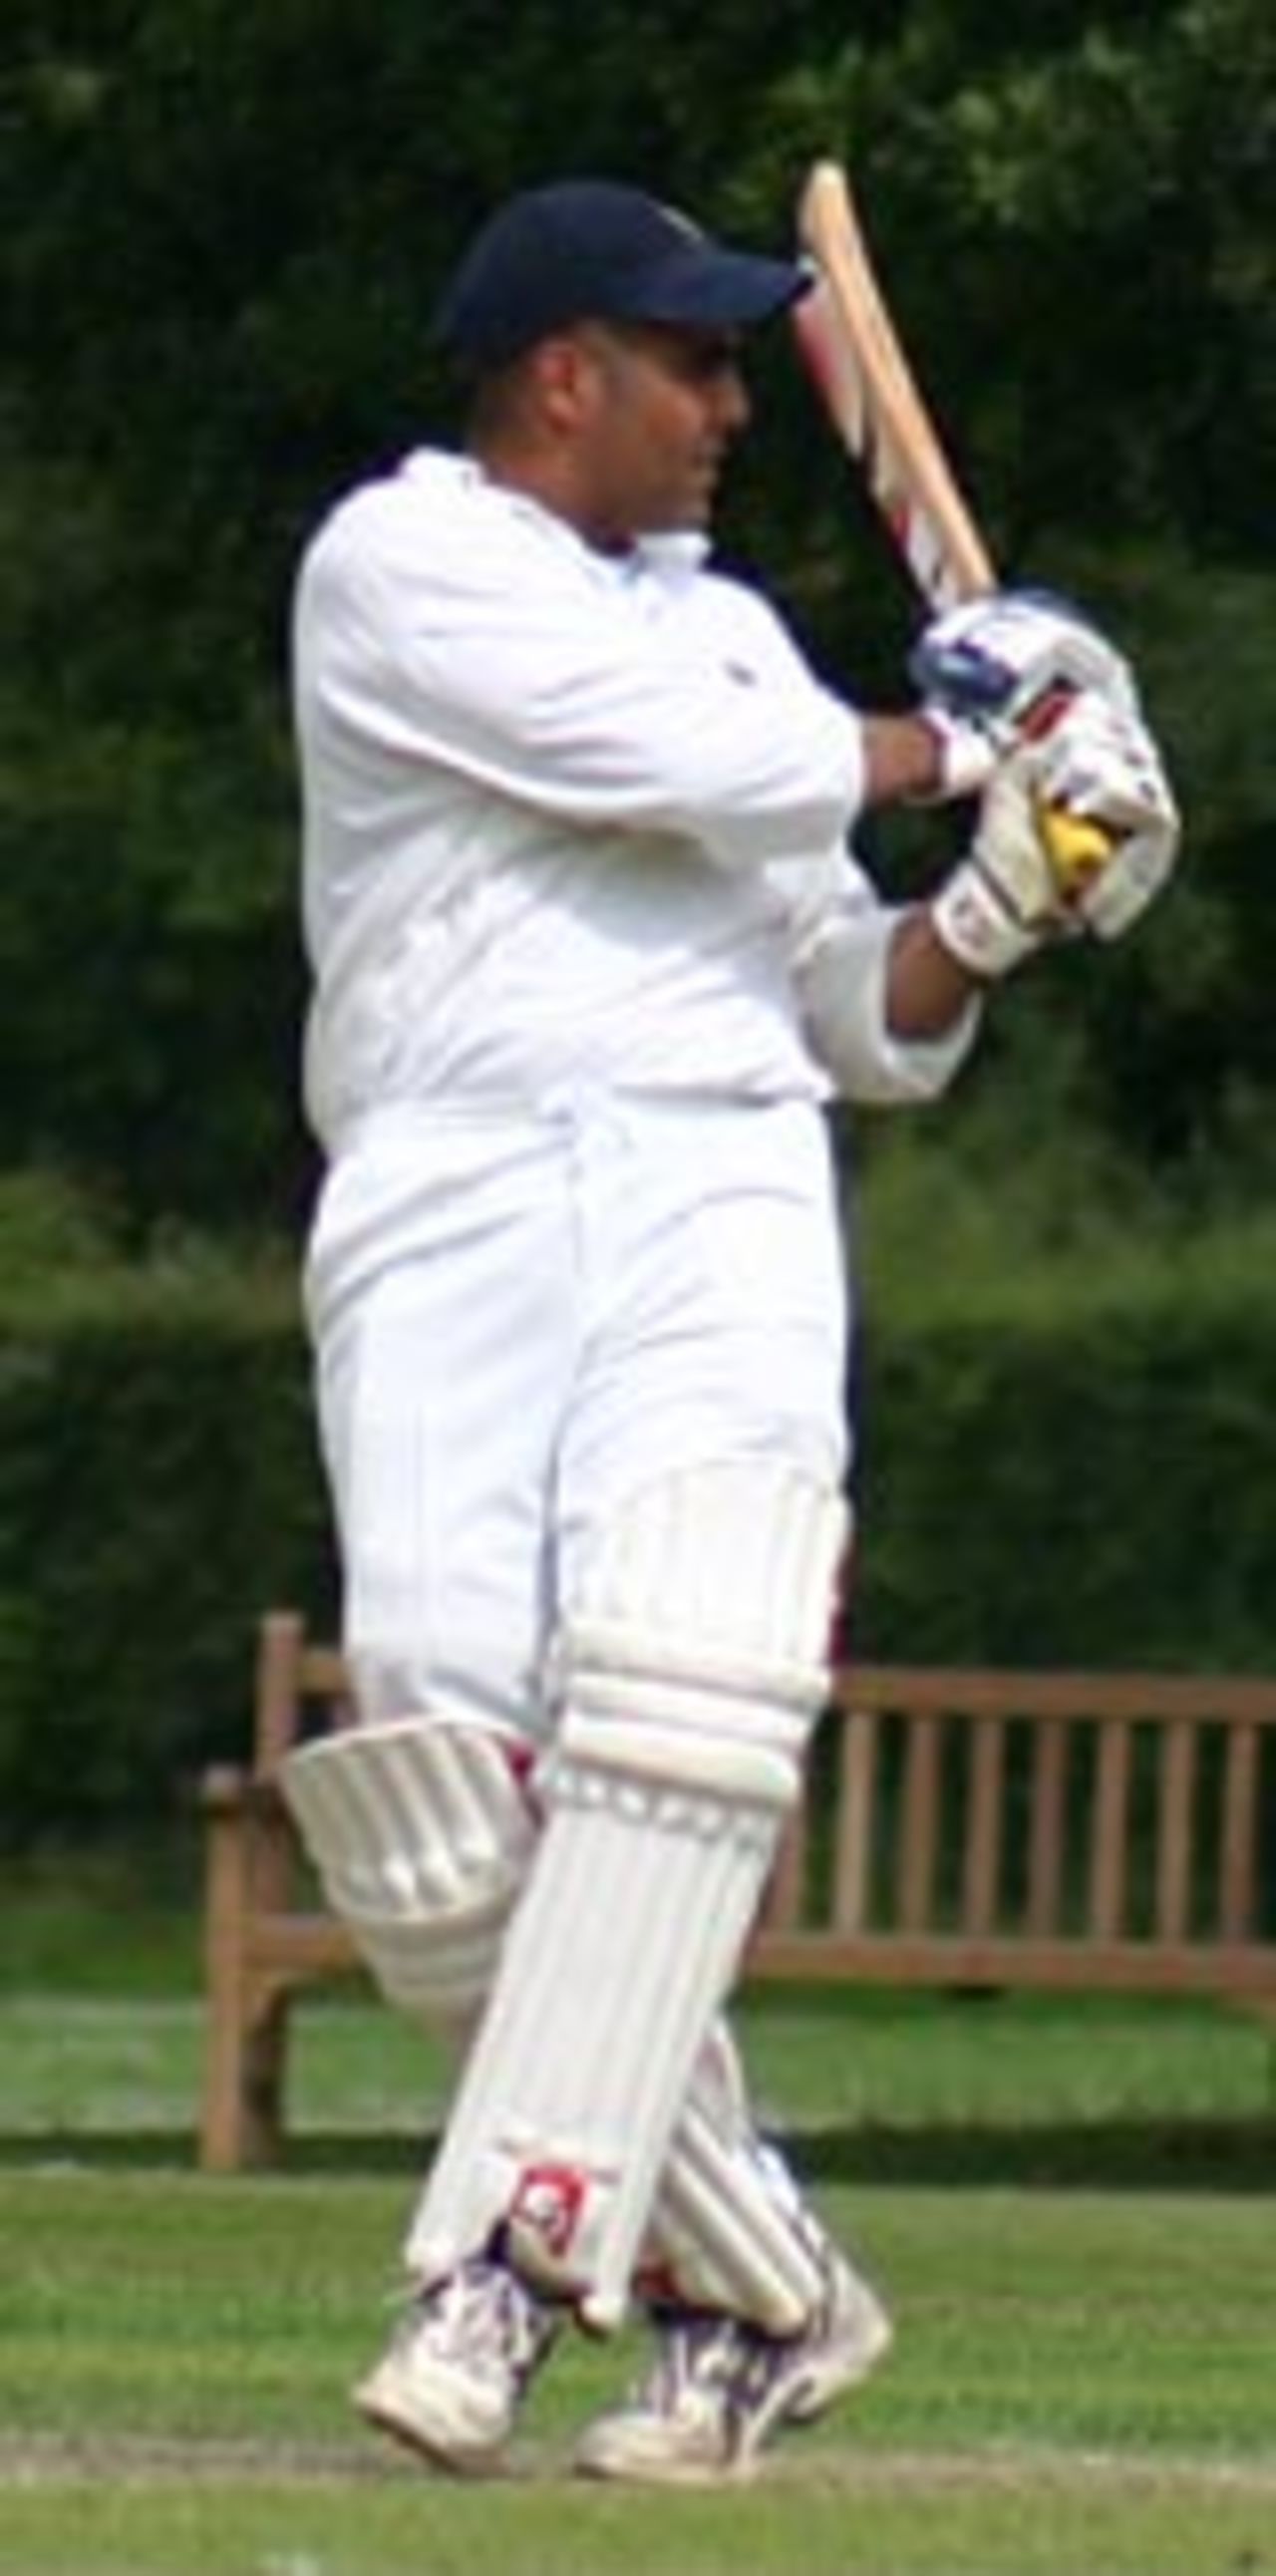 Abeed Janmohamed batting, Old Cranleighans v Old Suttonians, Cranleigh, July 18, 2004